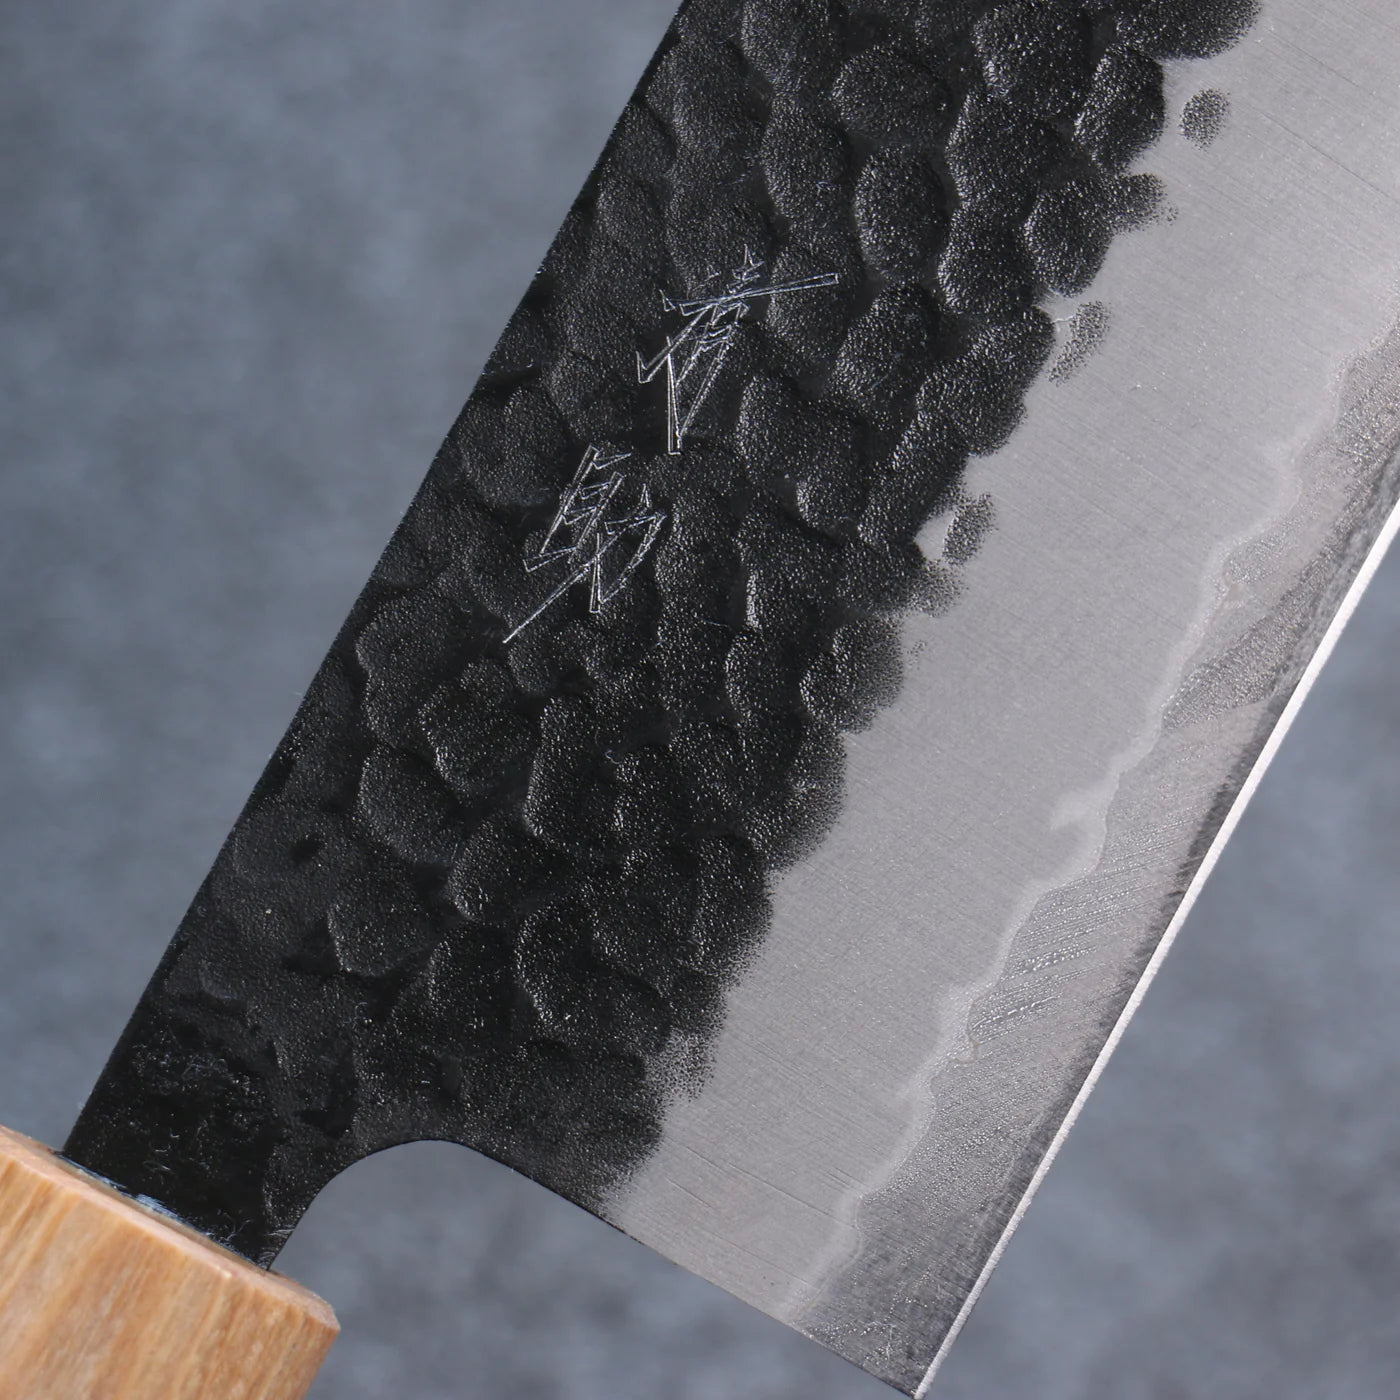 Handgeschmiedetes Messer der Marke Seisuke aus superblauem Stahl, Kurouchi Spezialisiertes Gemüsemesser, japanisches Nakiri-Messer, 165 mm Griff aus Sandelholz